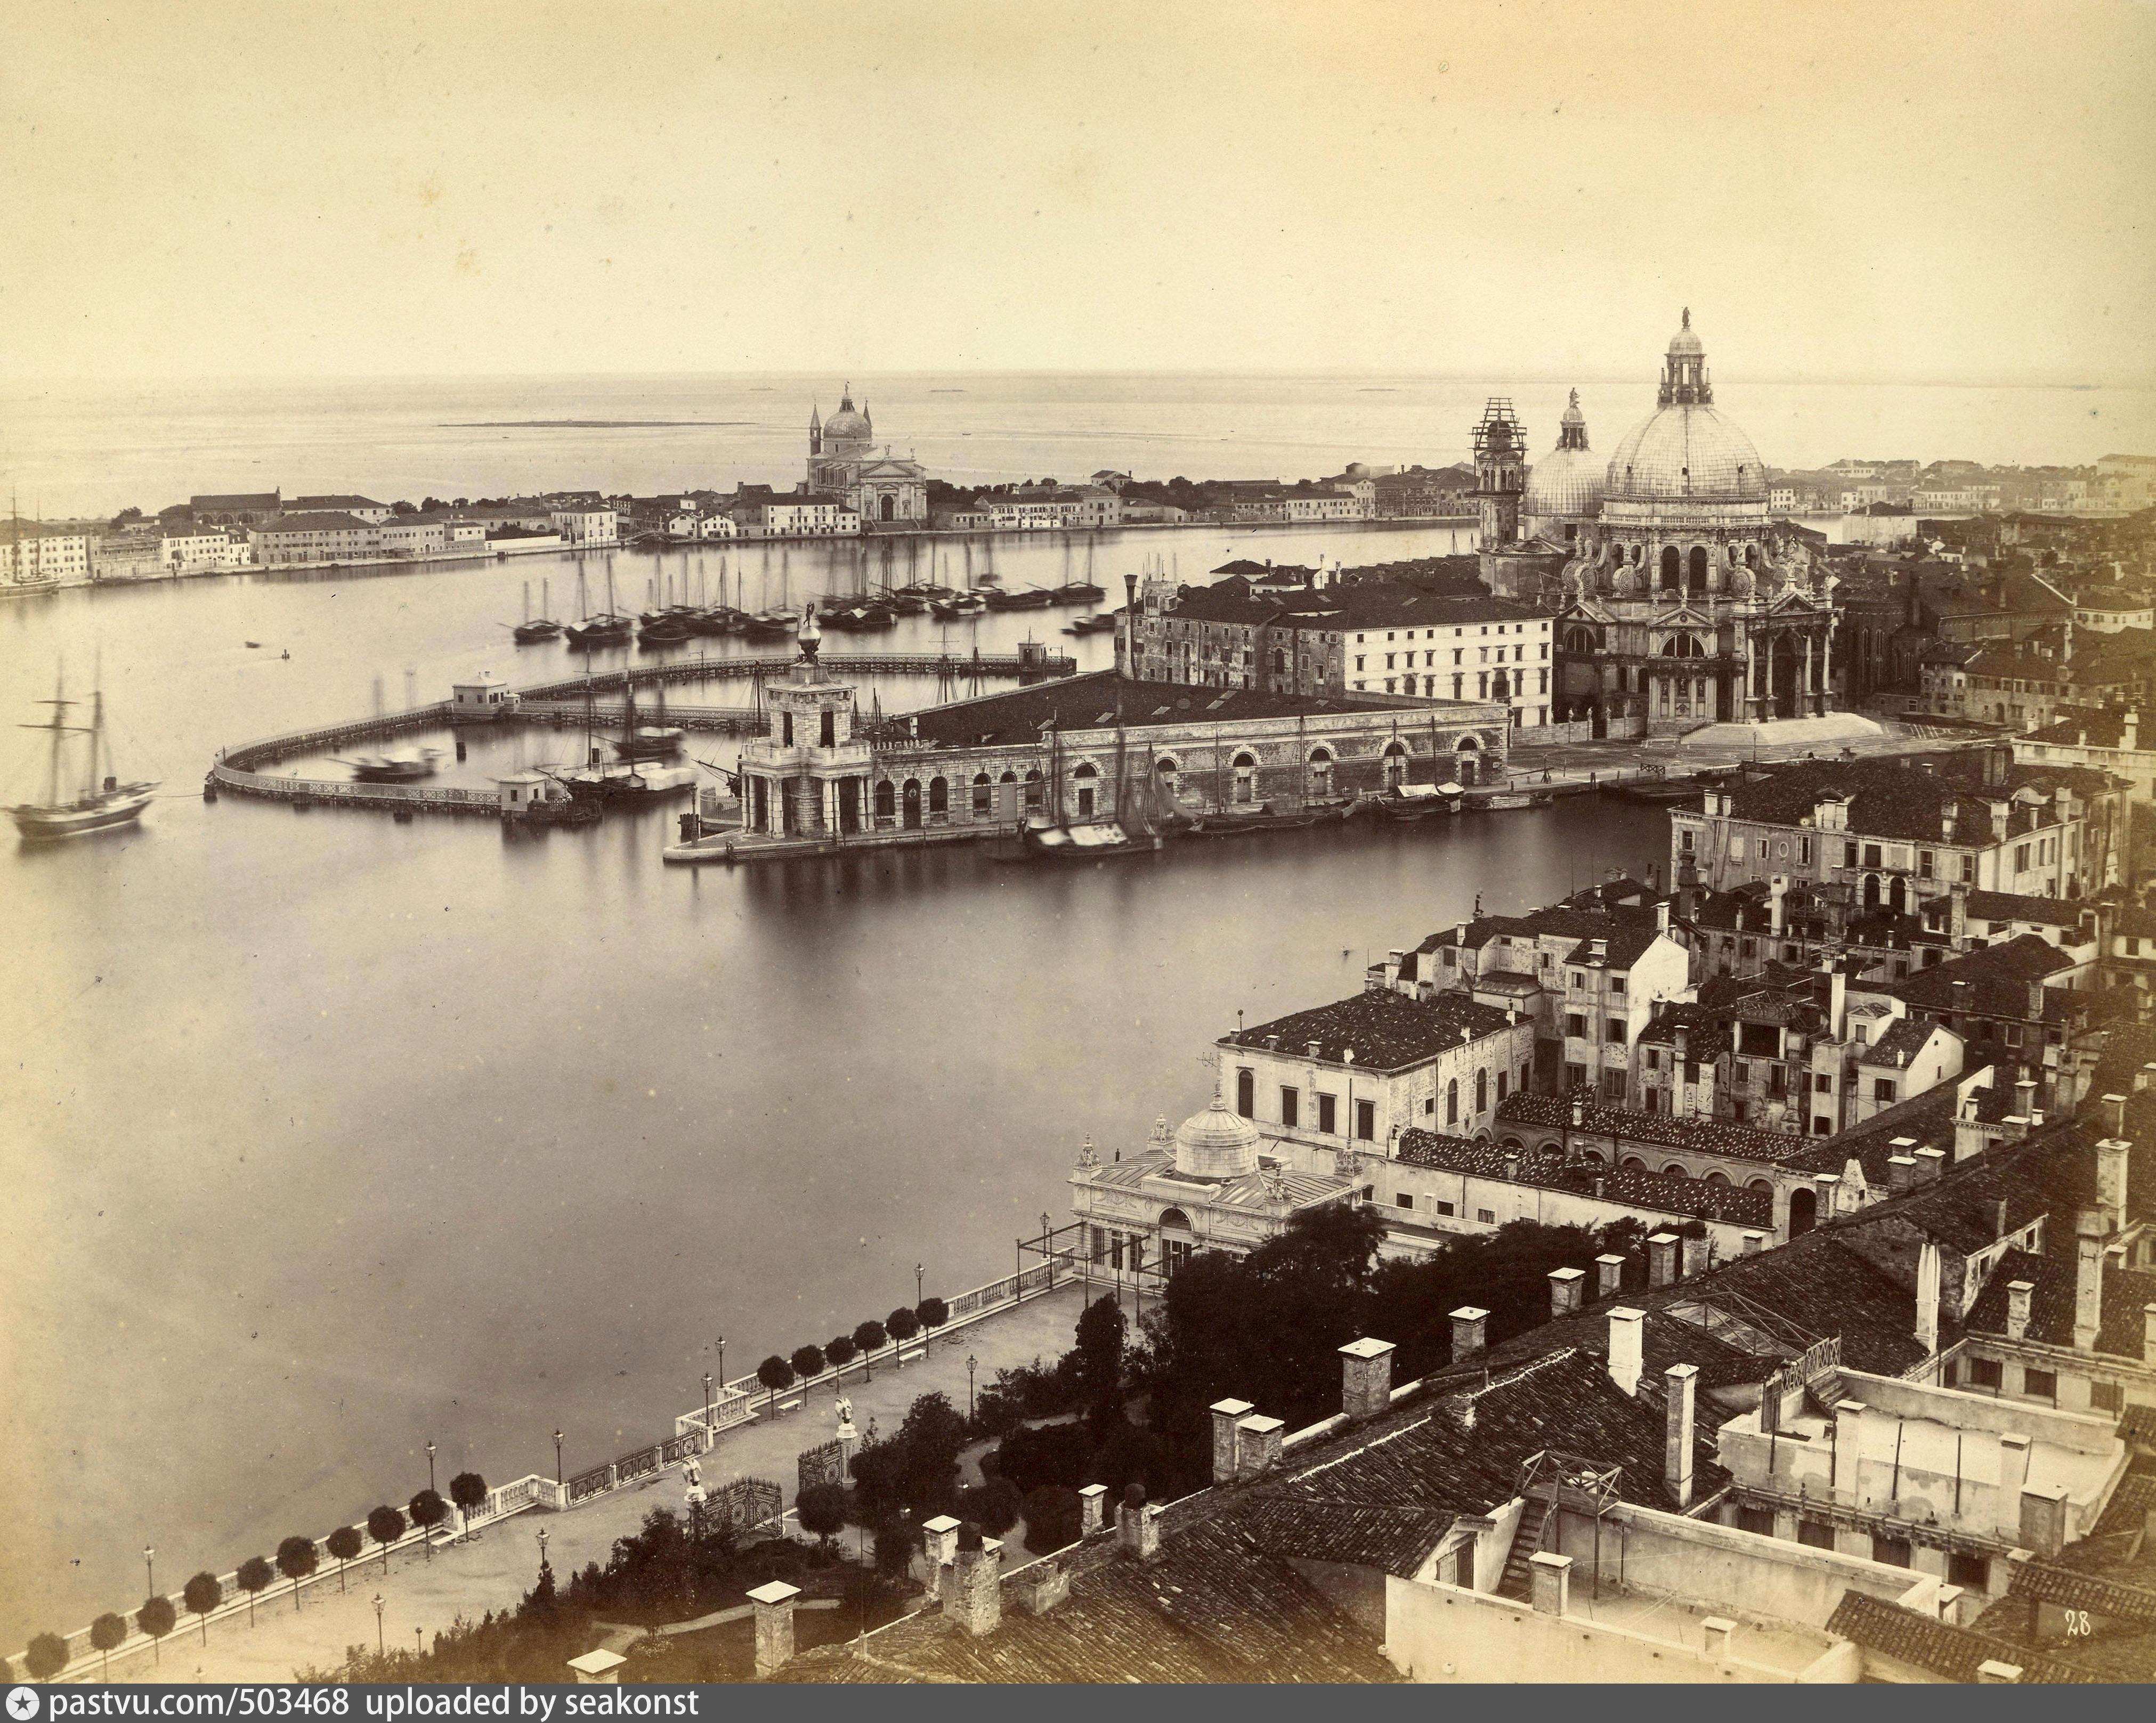 Xix century. Венеция 19 век. Венеция 1860 год. Венеция 1870. Фотографии 1860-х годов.